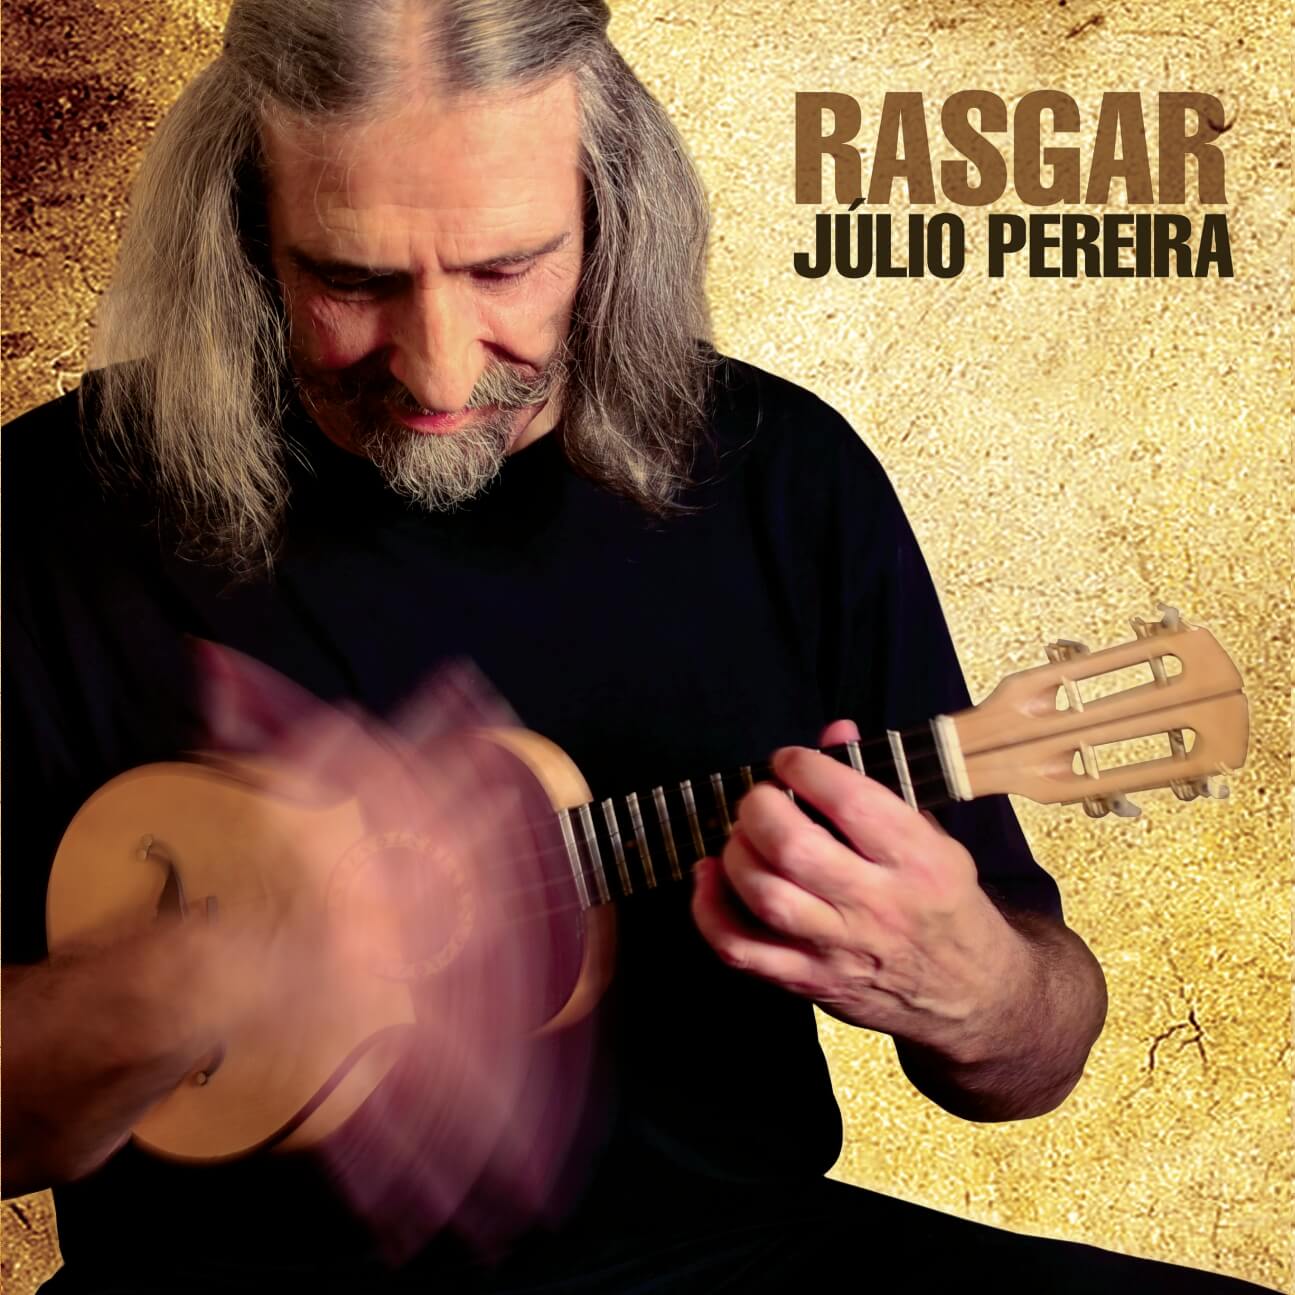 Book With CD - 'RASGAR' By Júlio Pereira